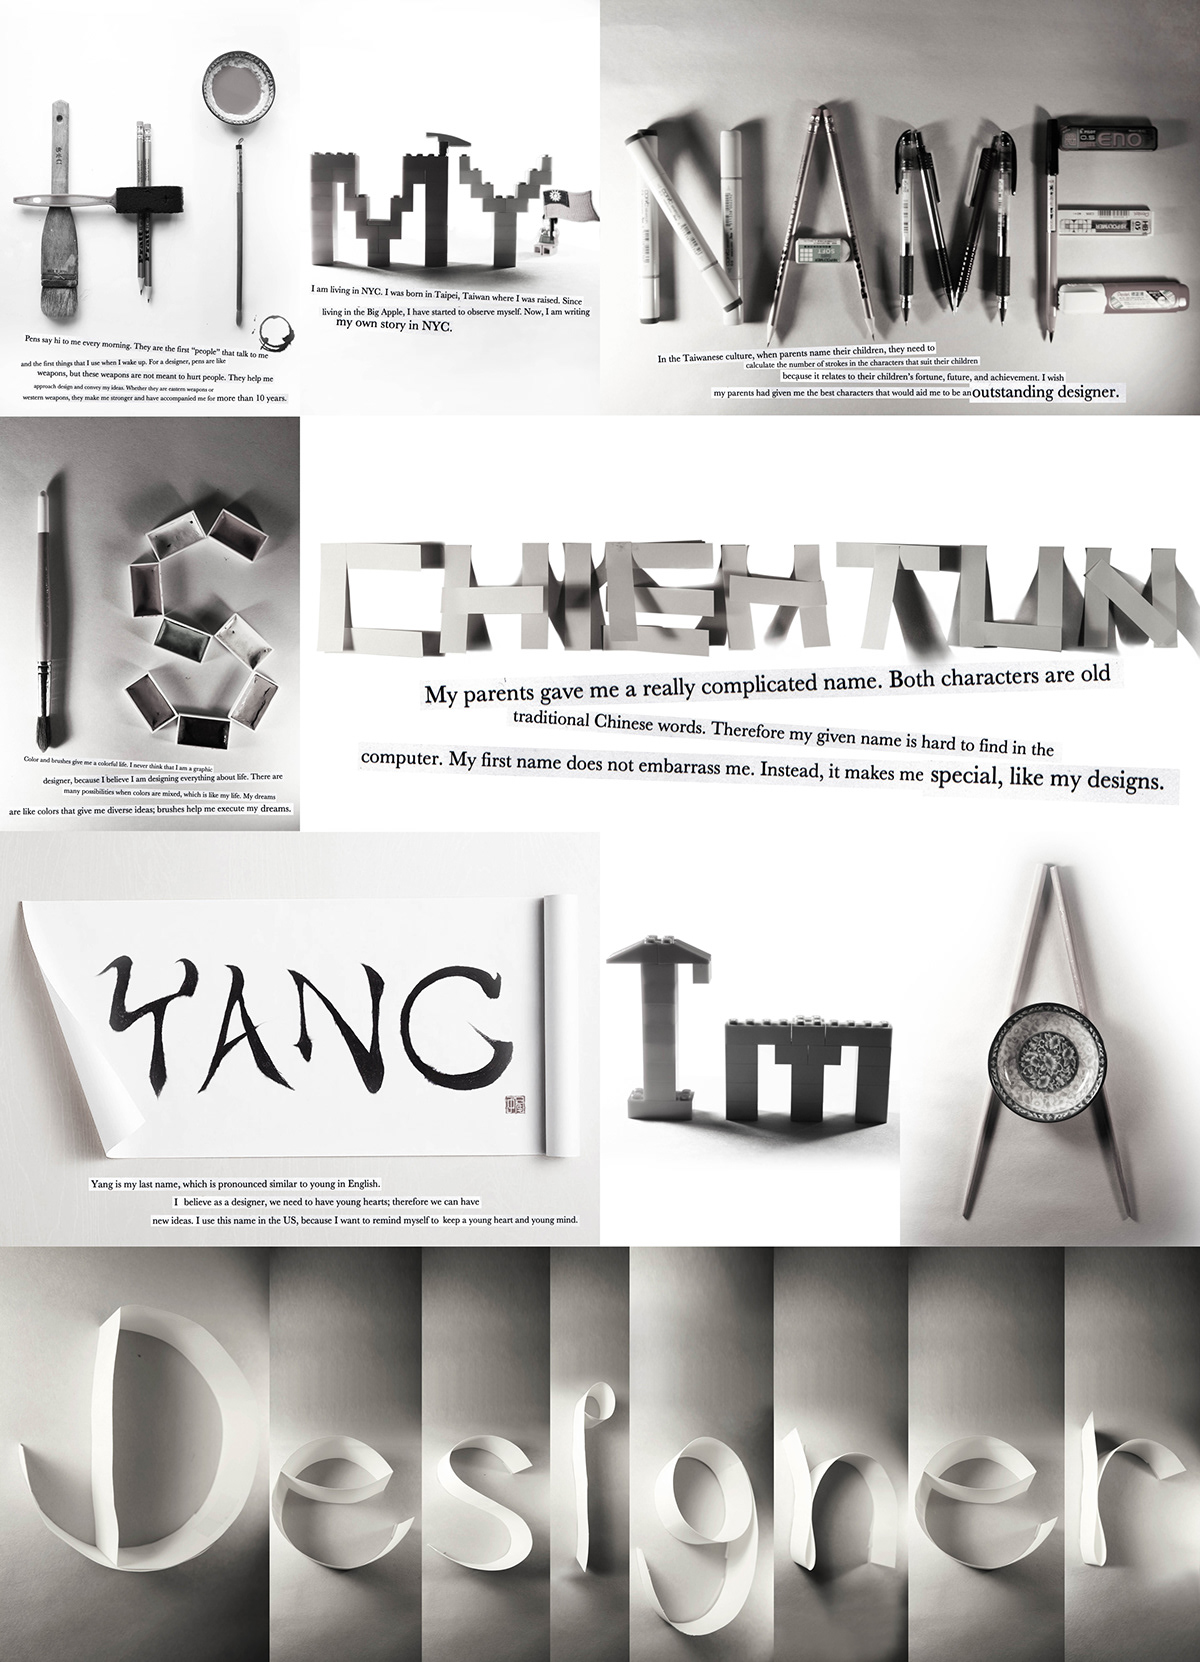 typographic